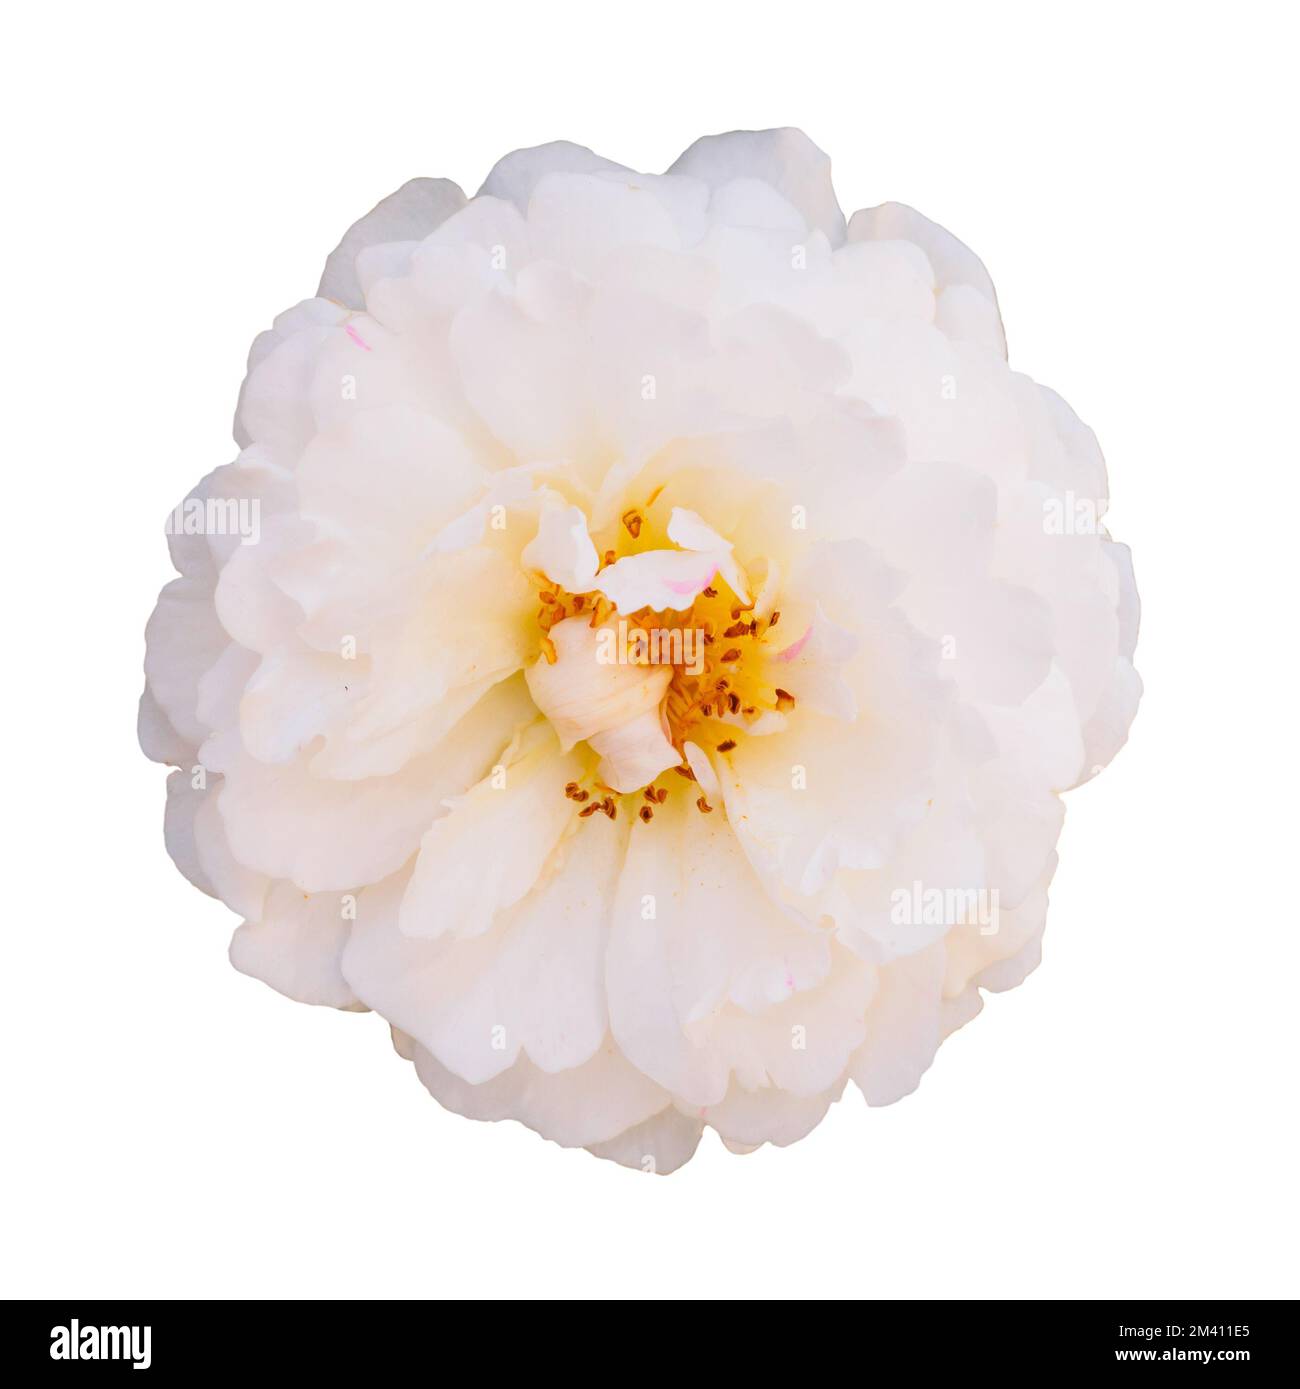 Rosa Bianca isolata su sfondo bianco Foto Stock